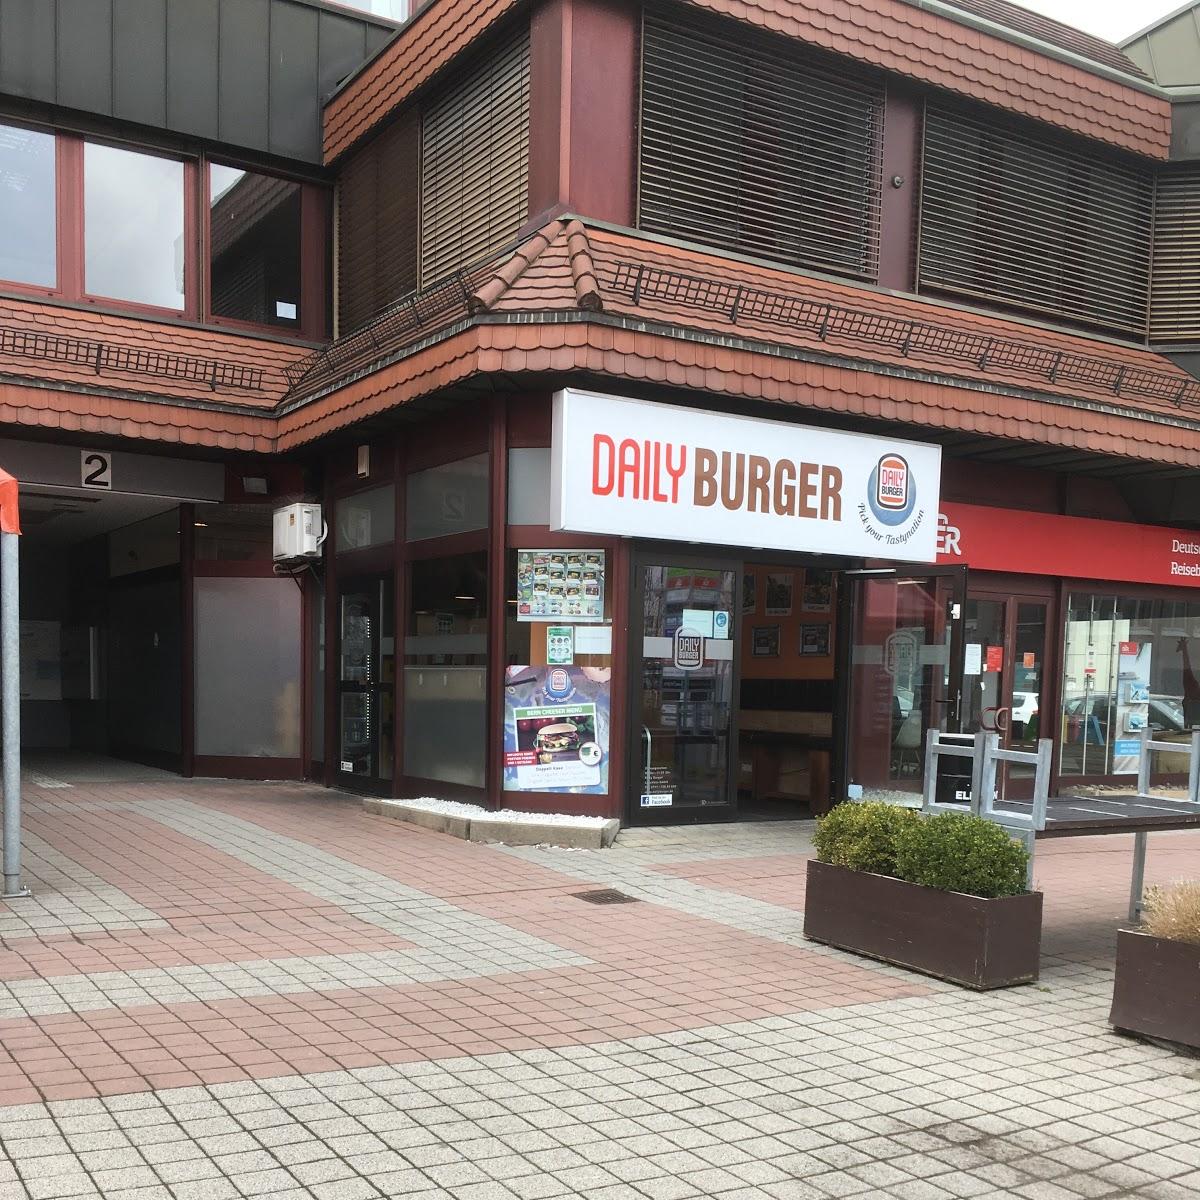 Restaurant "Daily Burger" in Stuttgart